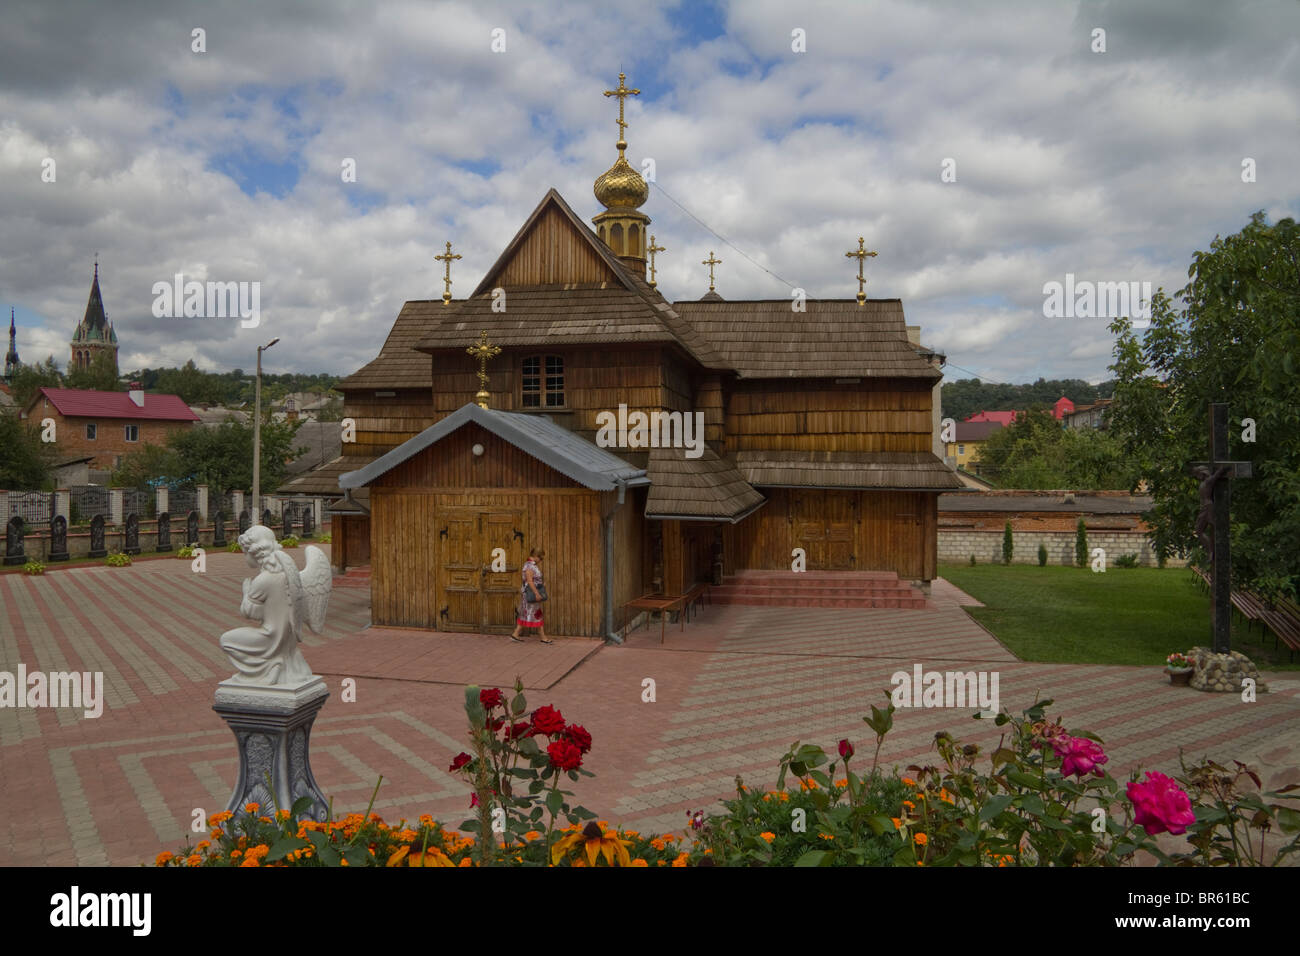 Wooden church of Dormition, Chortkiv, Ternopil oblast (province), Podillya, Western Ukraine Stock Photo